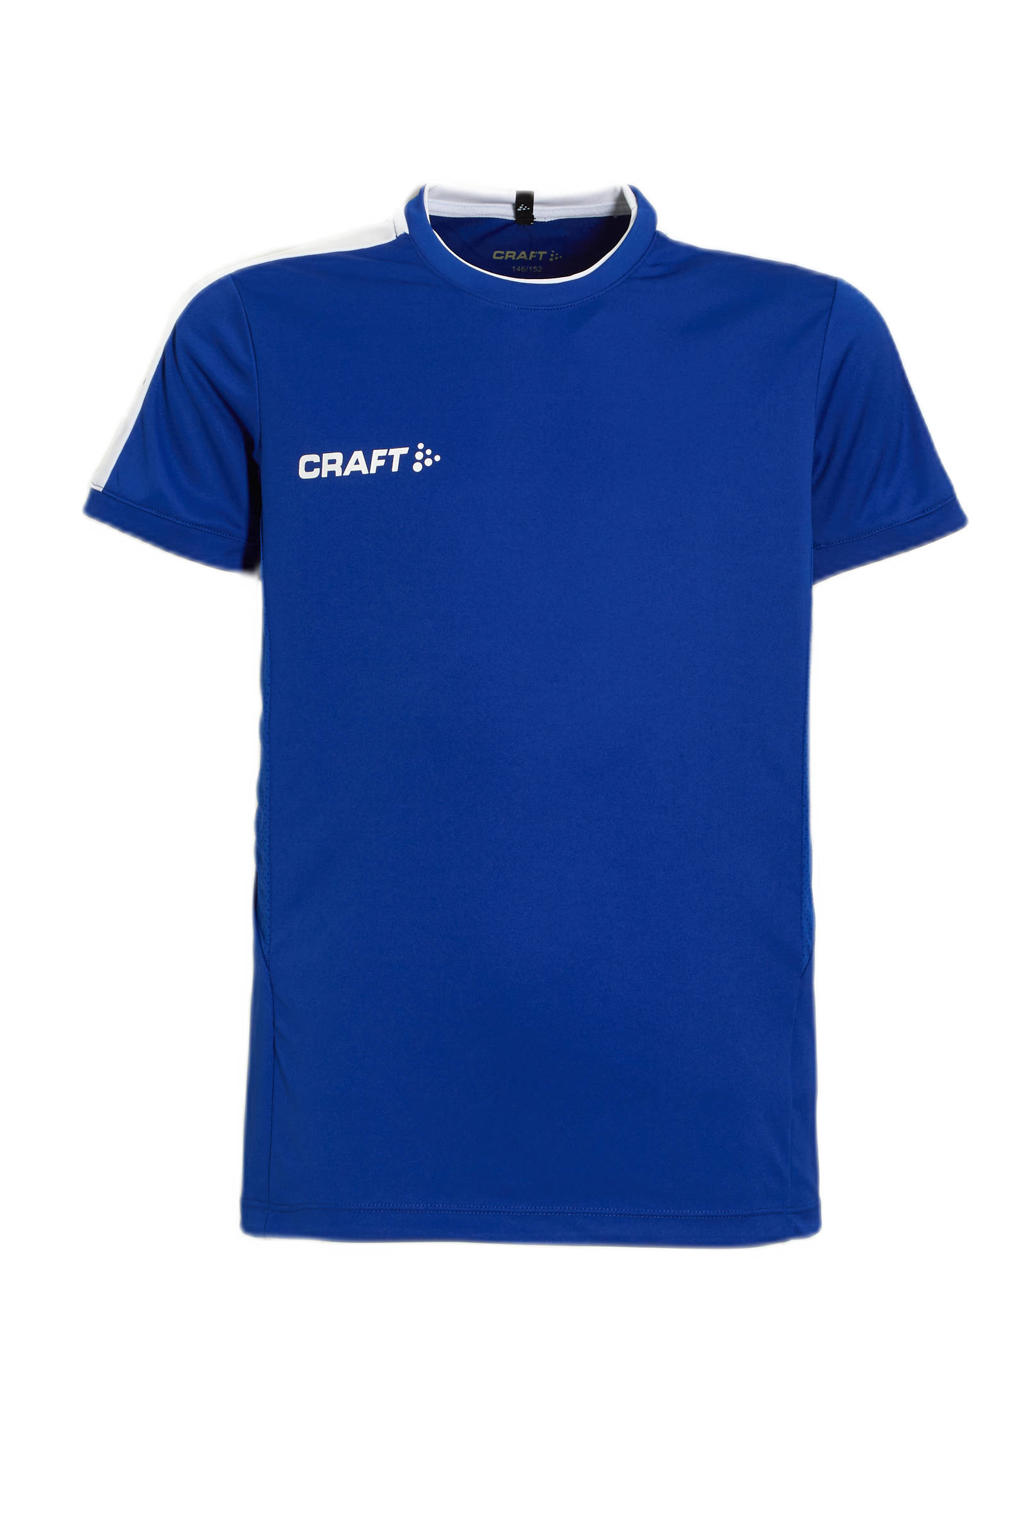 Blauwe jongens Craft Junior sport T-shirt van polyester met logo dessin, korte mouwen en ronde hals